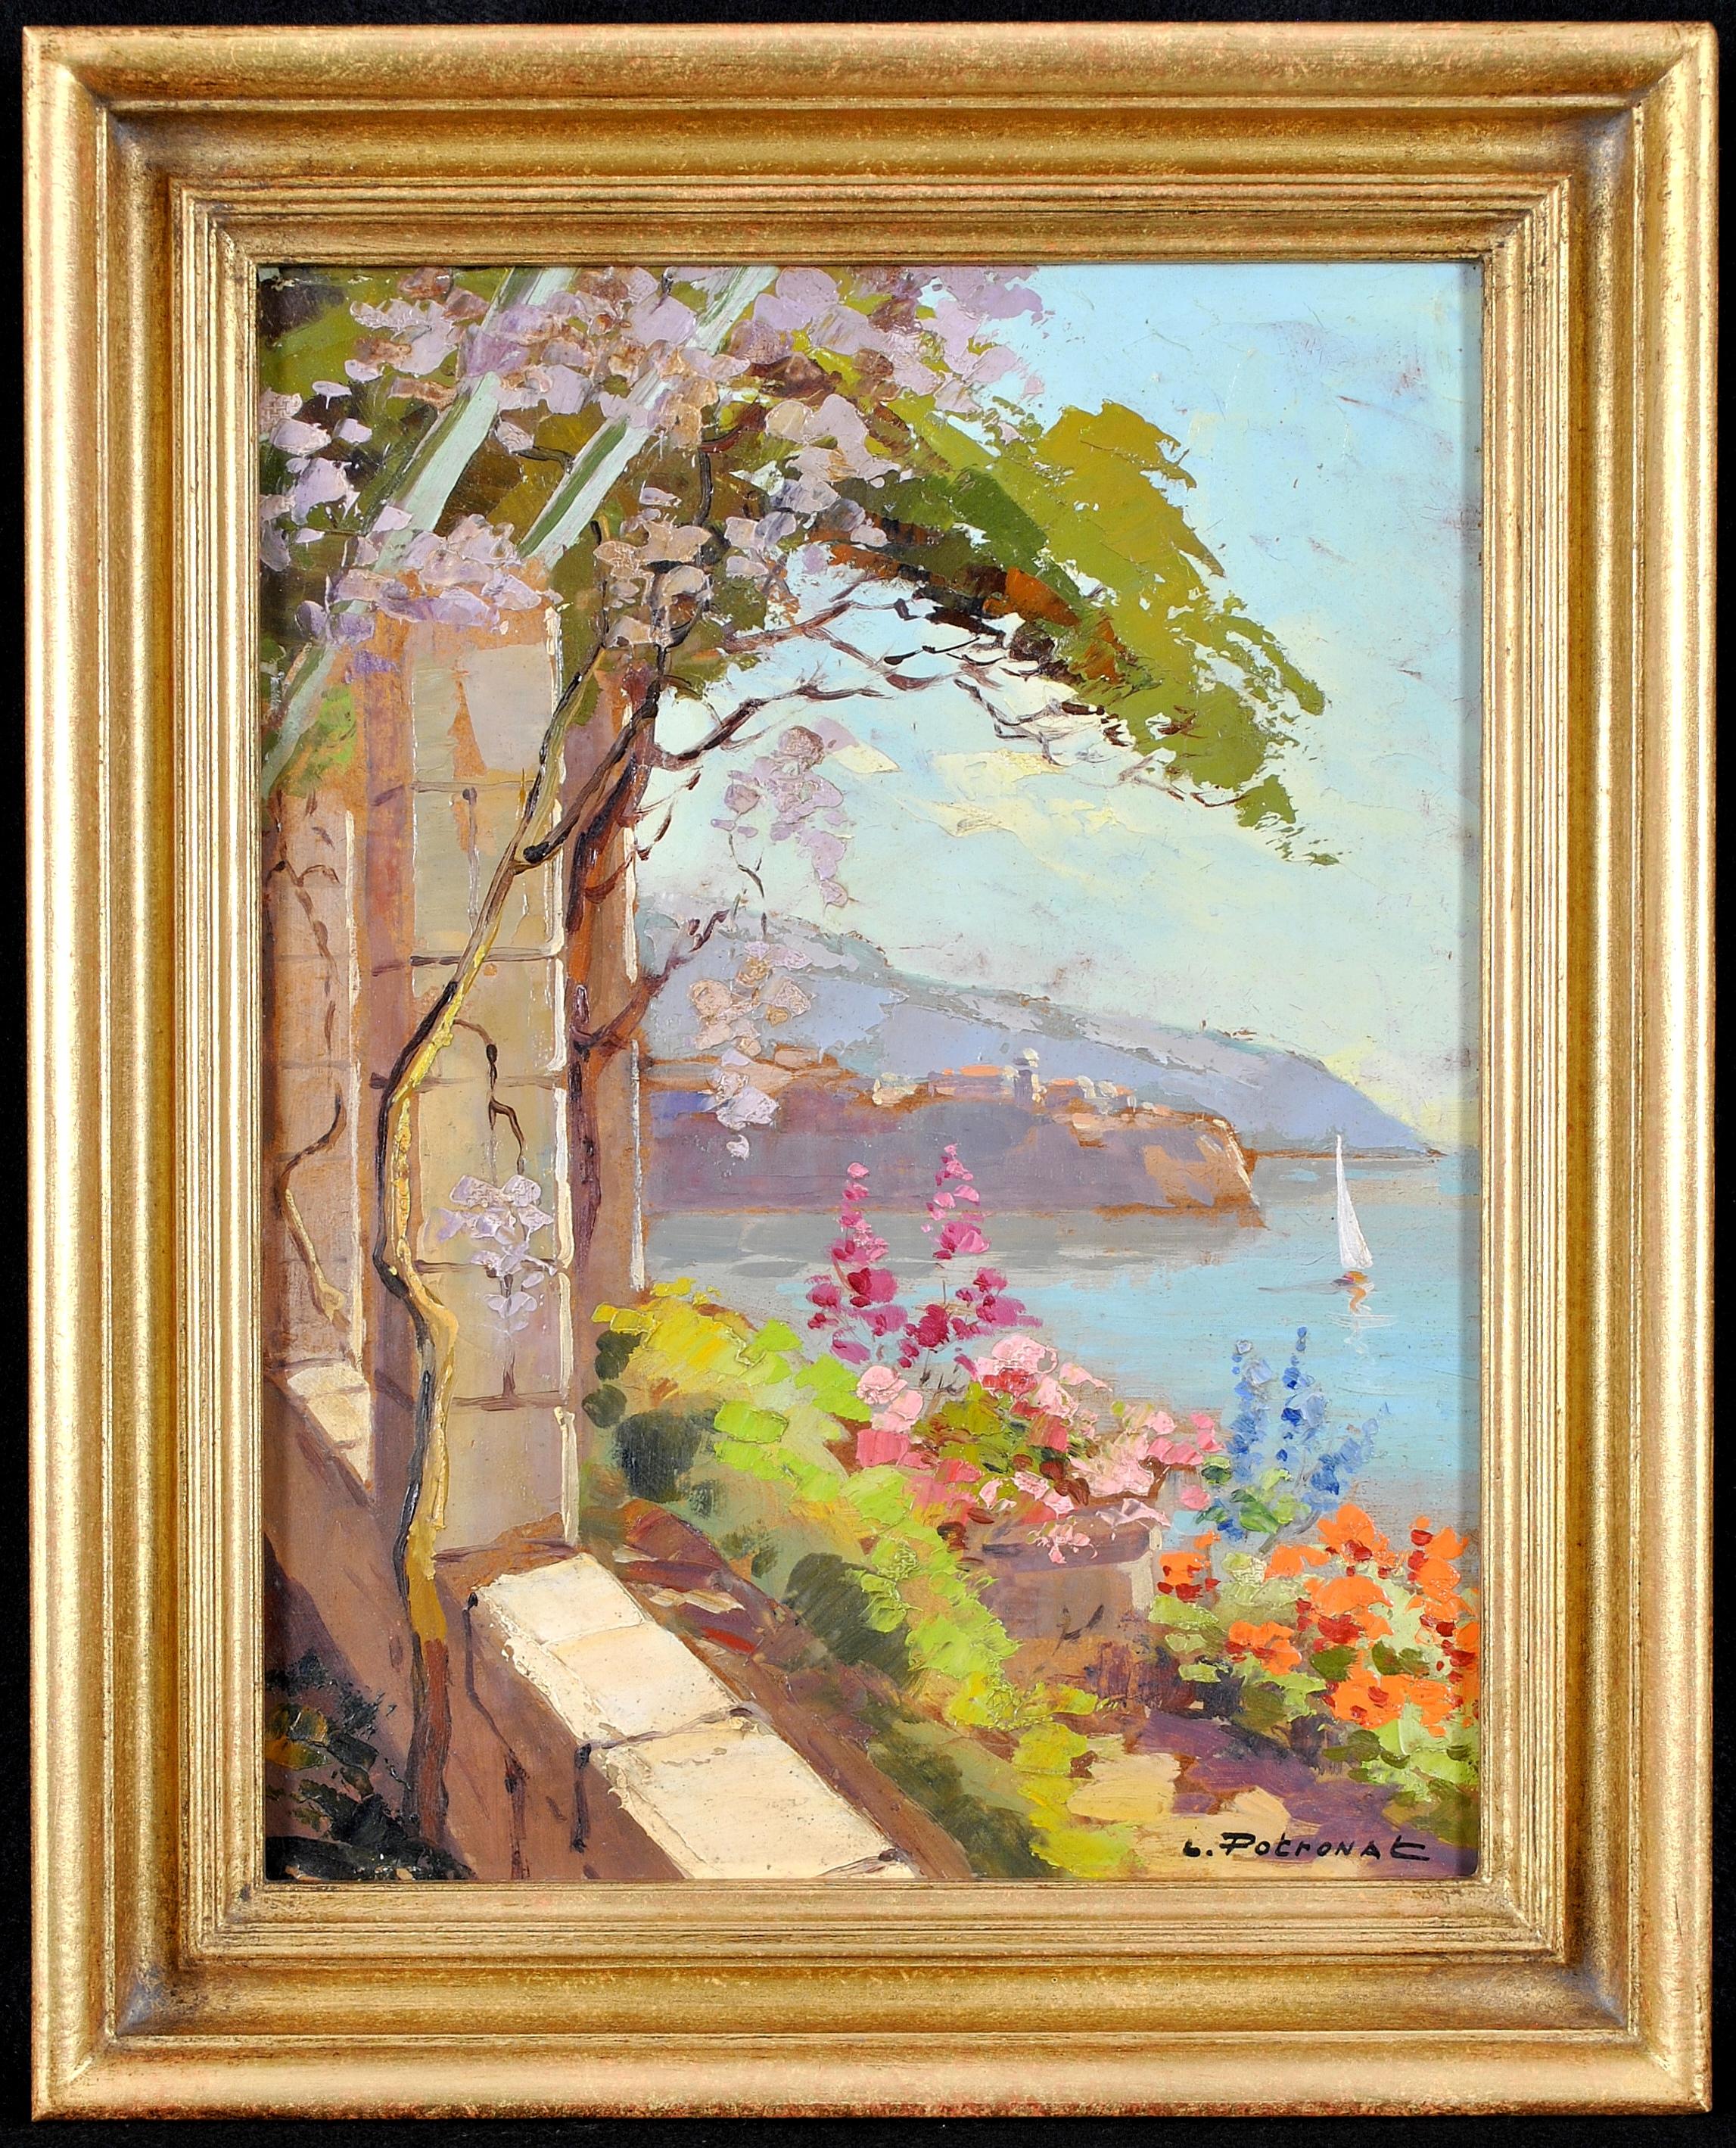 Cote d'Azur – Französische Riviera von Balcony, impressionistisches Ölgemälde